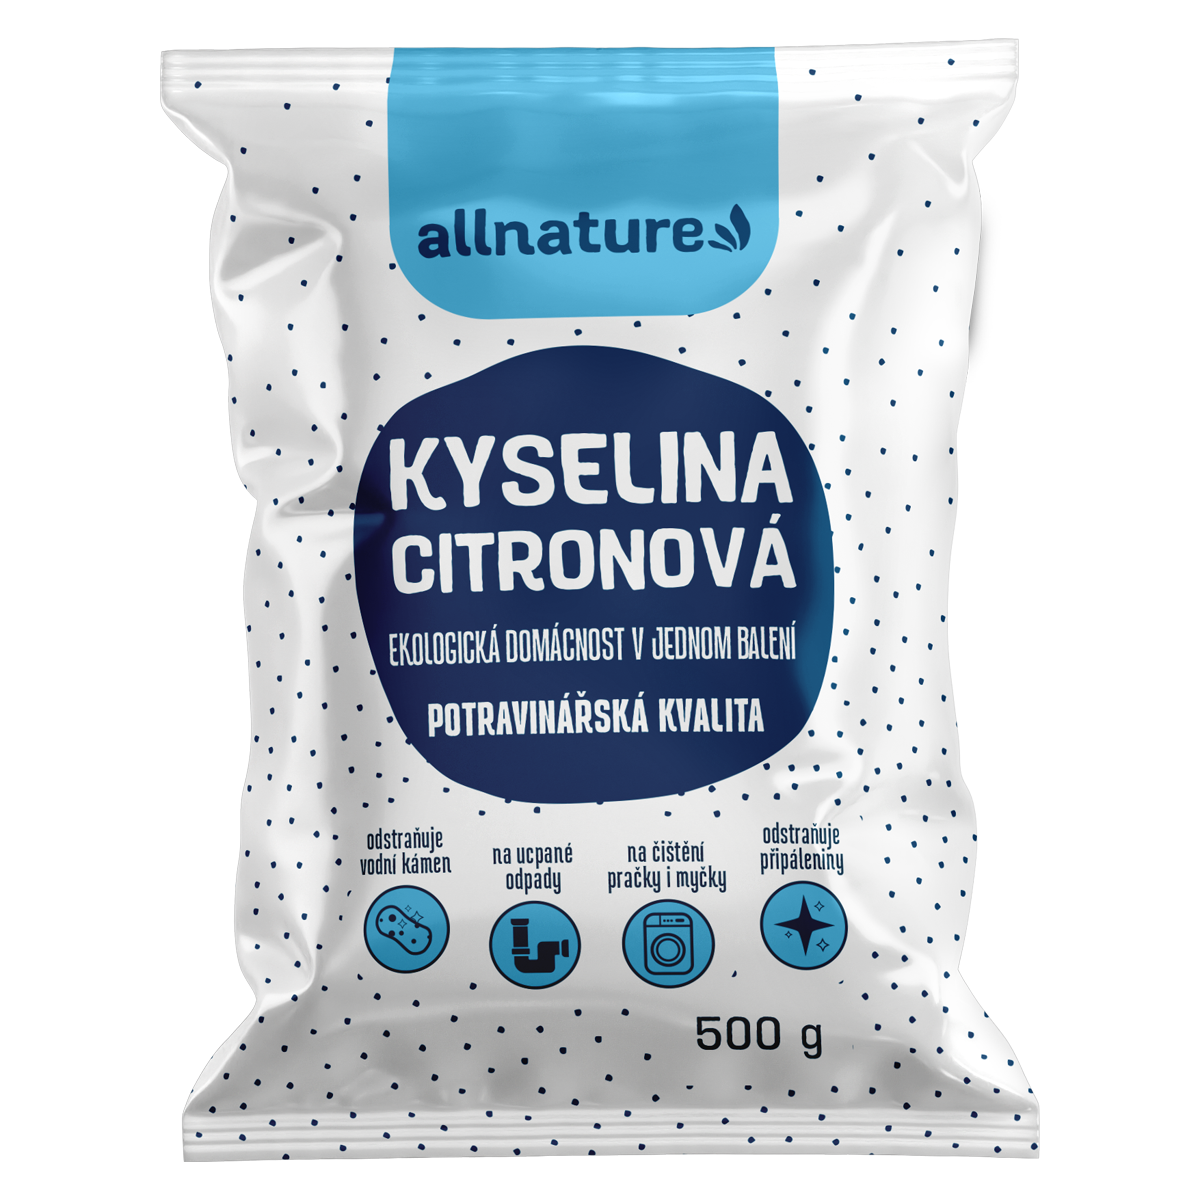 Allnature Kyselina citronová (500 g) - II. jakost - potravinářská kvalita